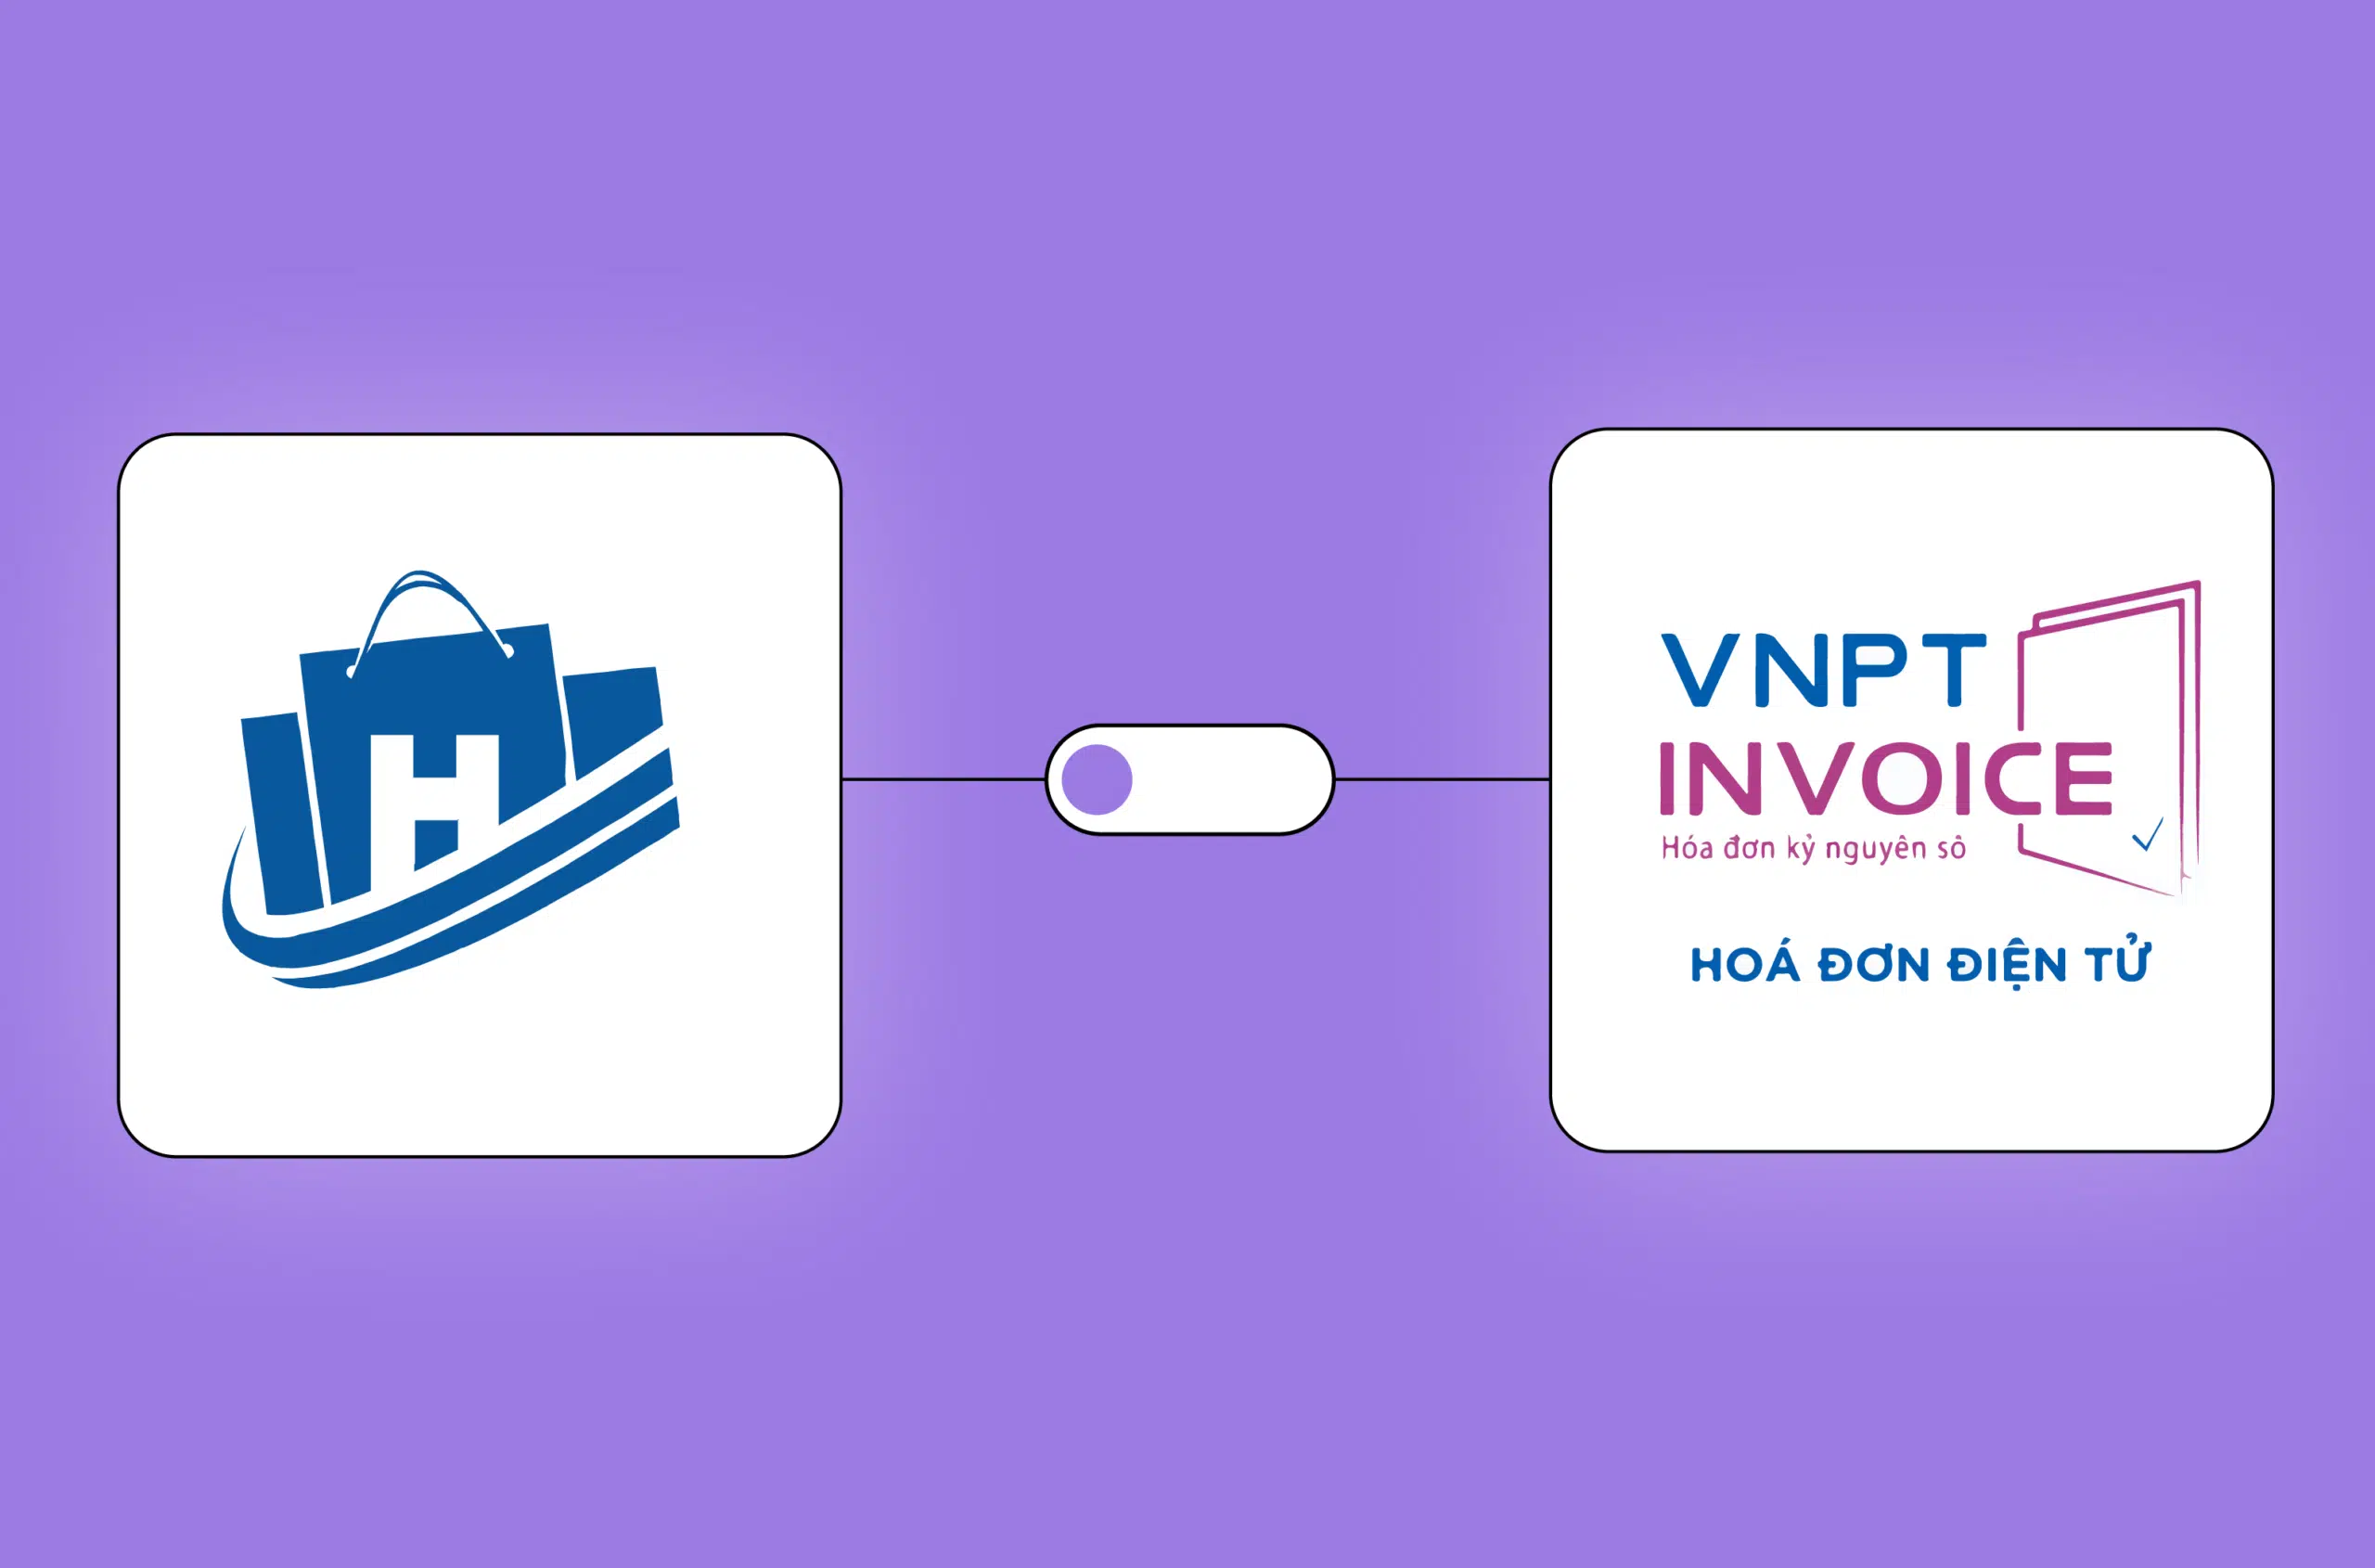 Các lợi ích và cơ hội kinh doanh khi tích hợp phần mềm Haravan và VNPT Invoice